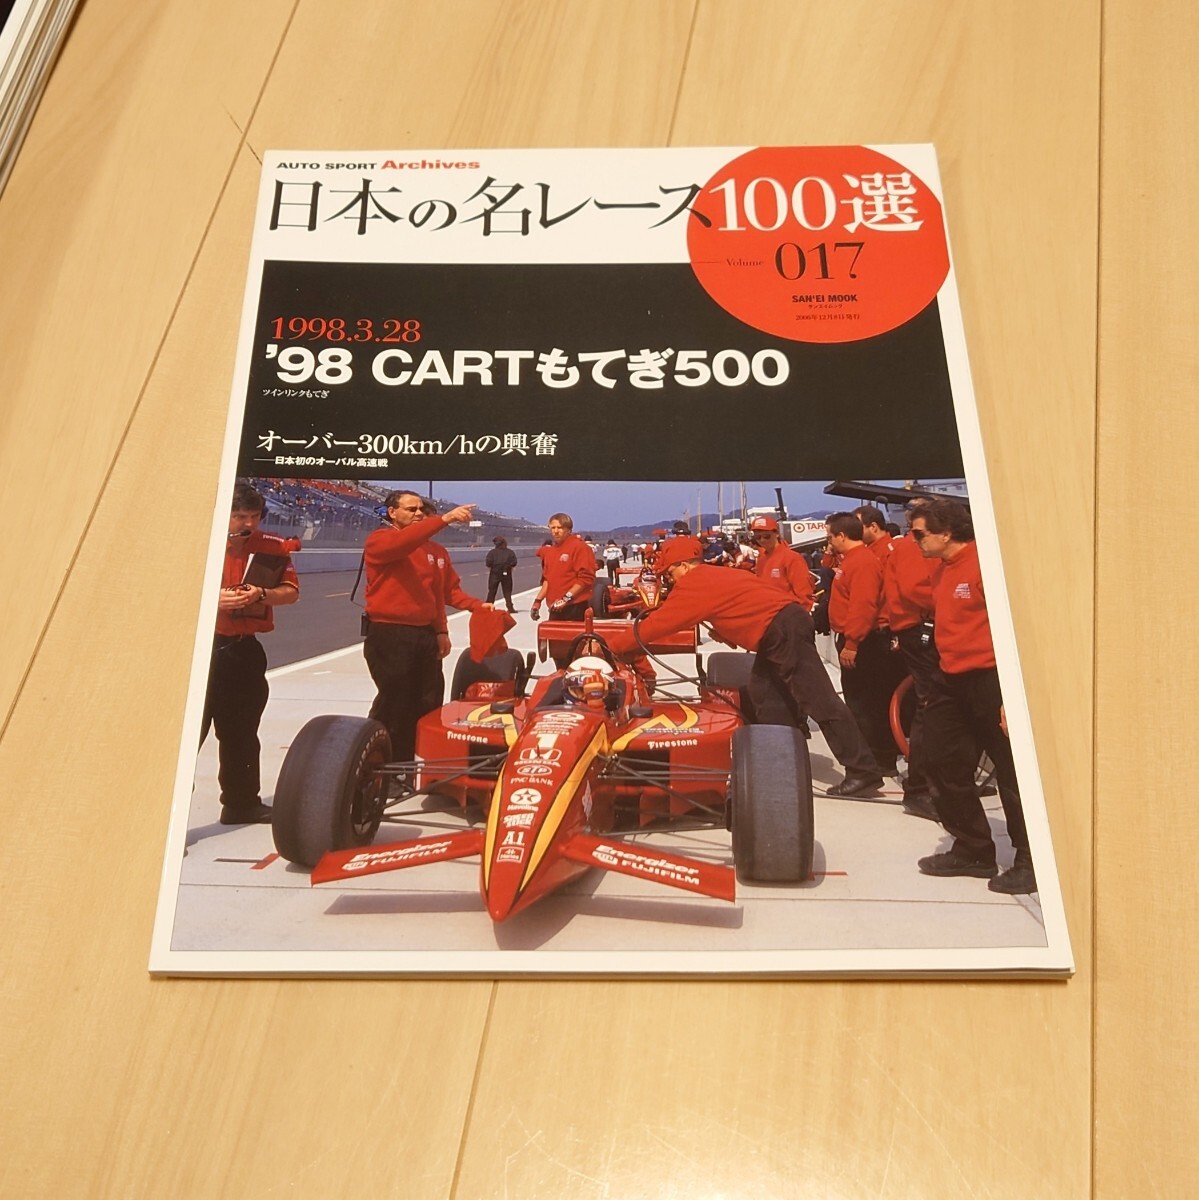 三栄書房 日本の名レース100選 017 Vol.17 '98 CARTもてぎ500 車 雑誌_画像1